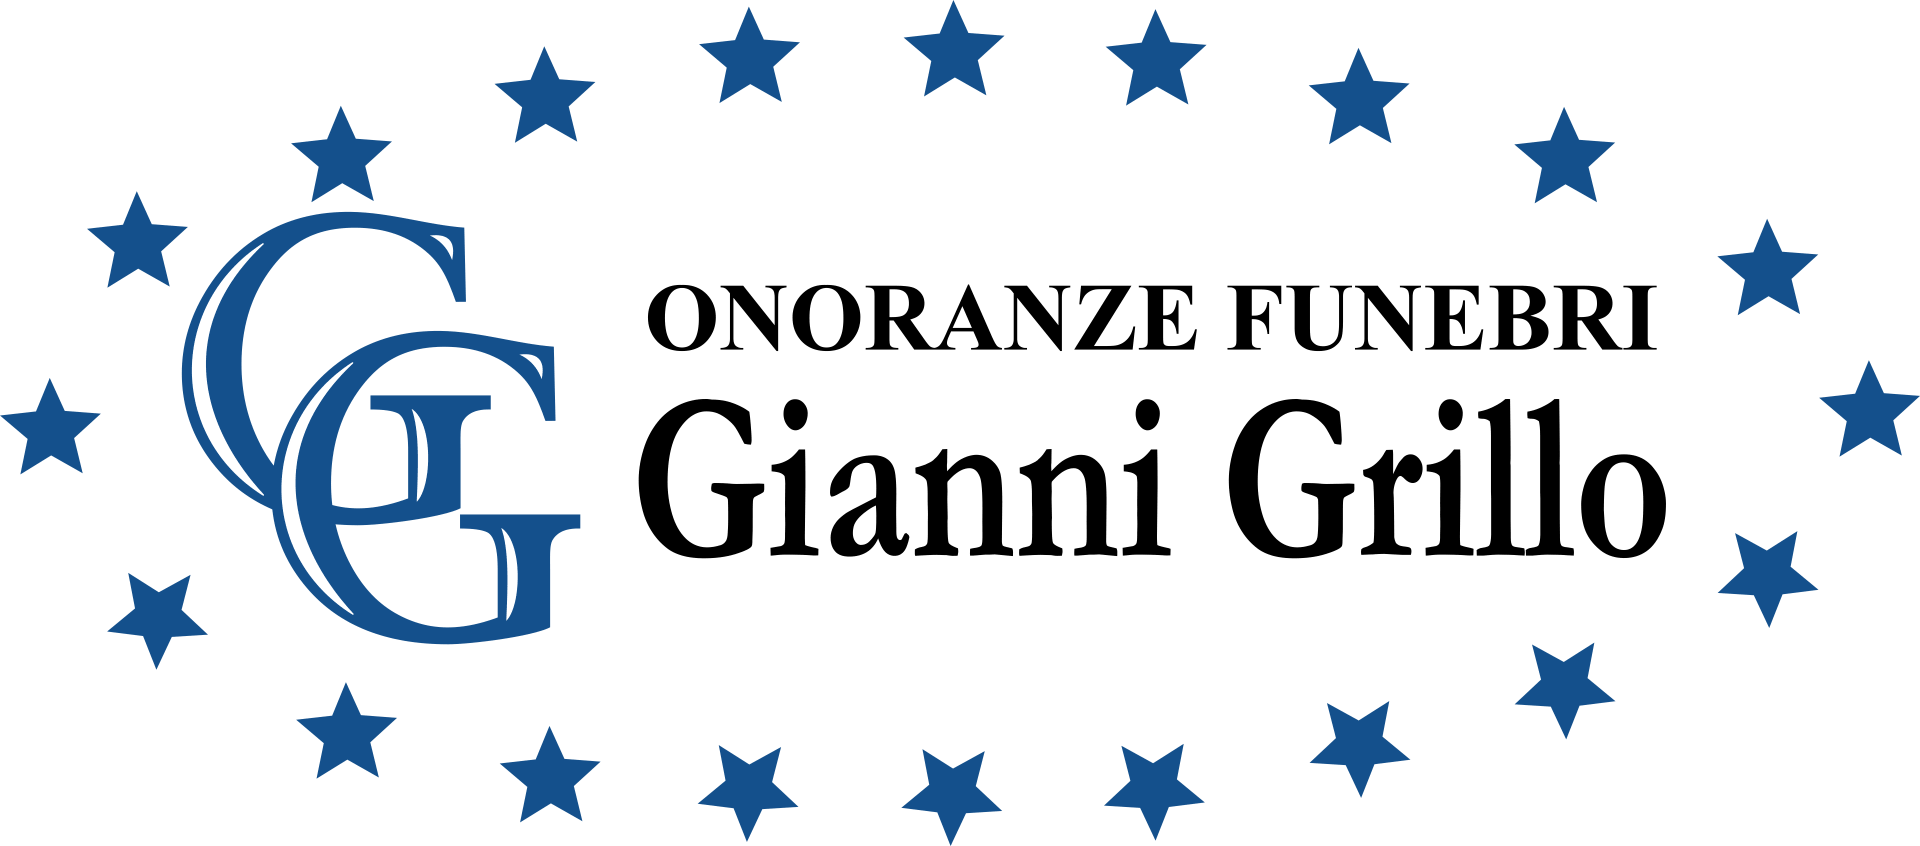 Onoranze Funebri Grillo Gianni: Servizi cimiteriali | Rieti